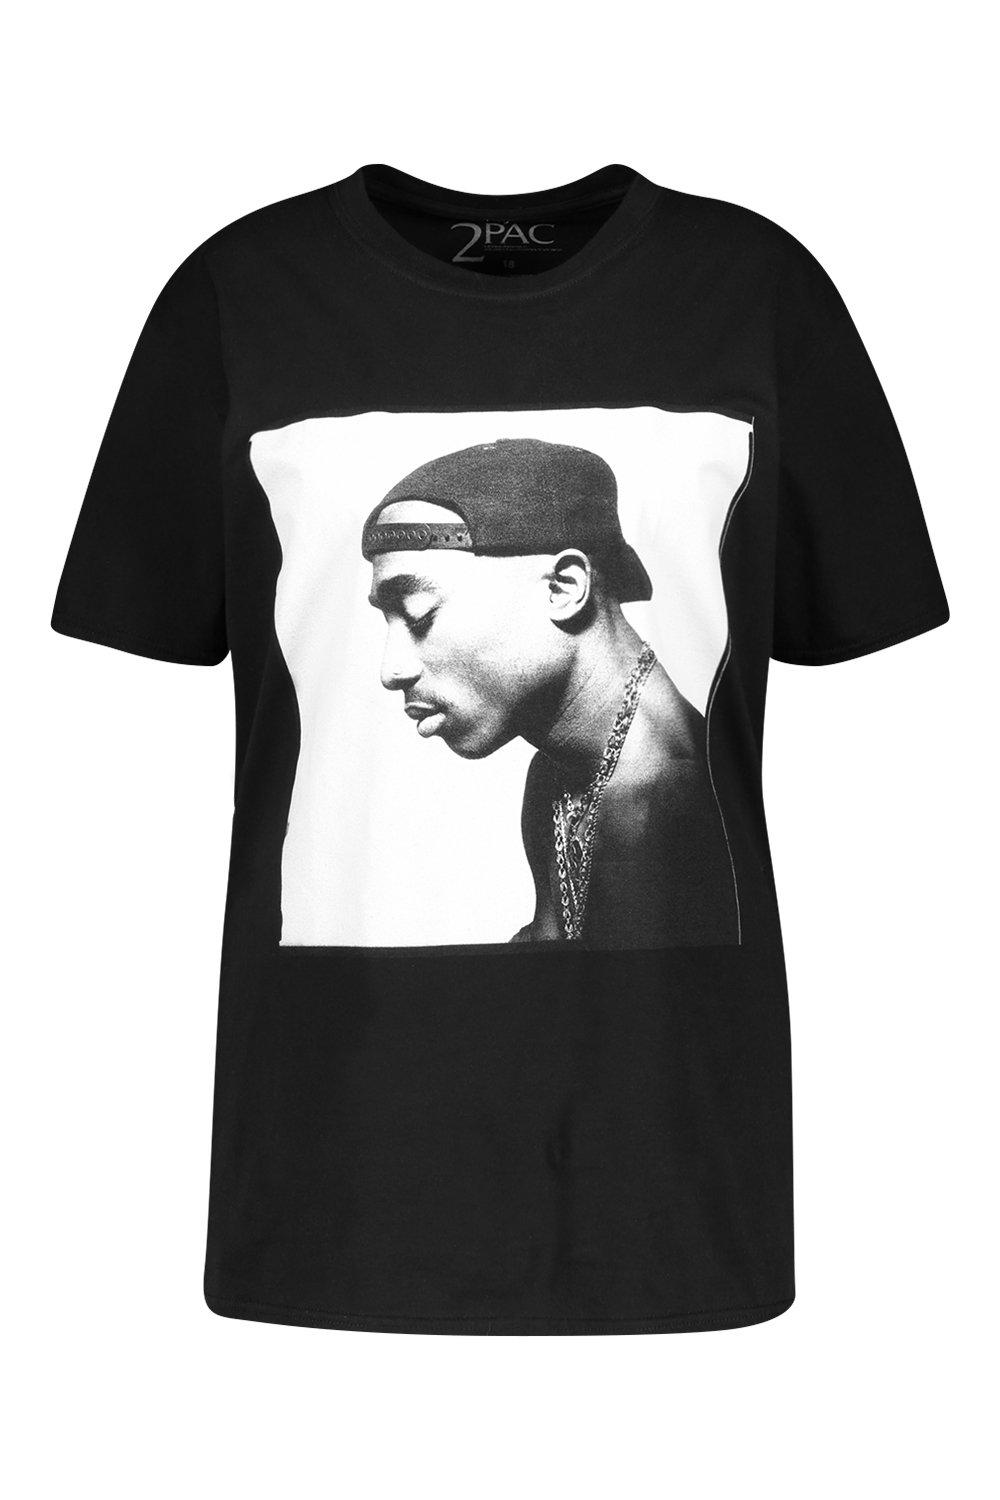 Plus Tupac License T-Shirt